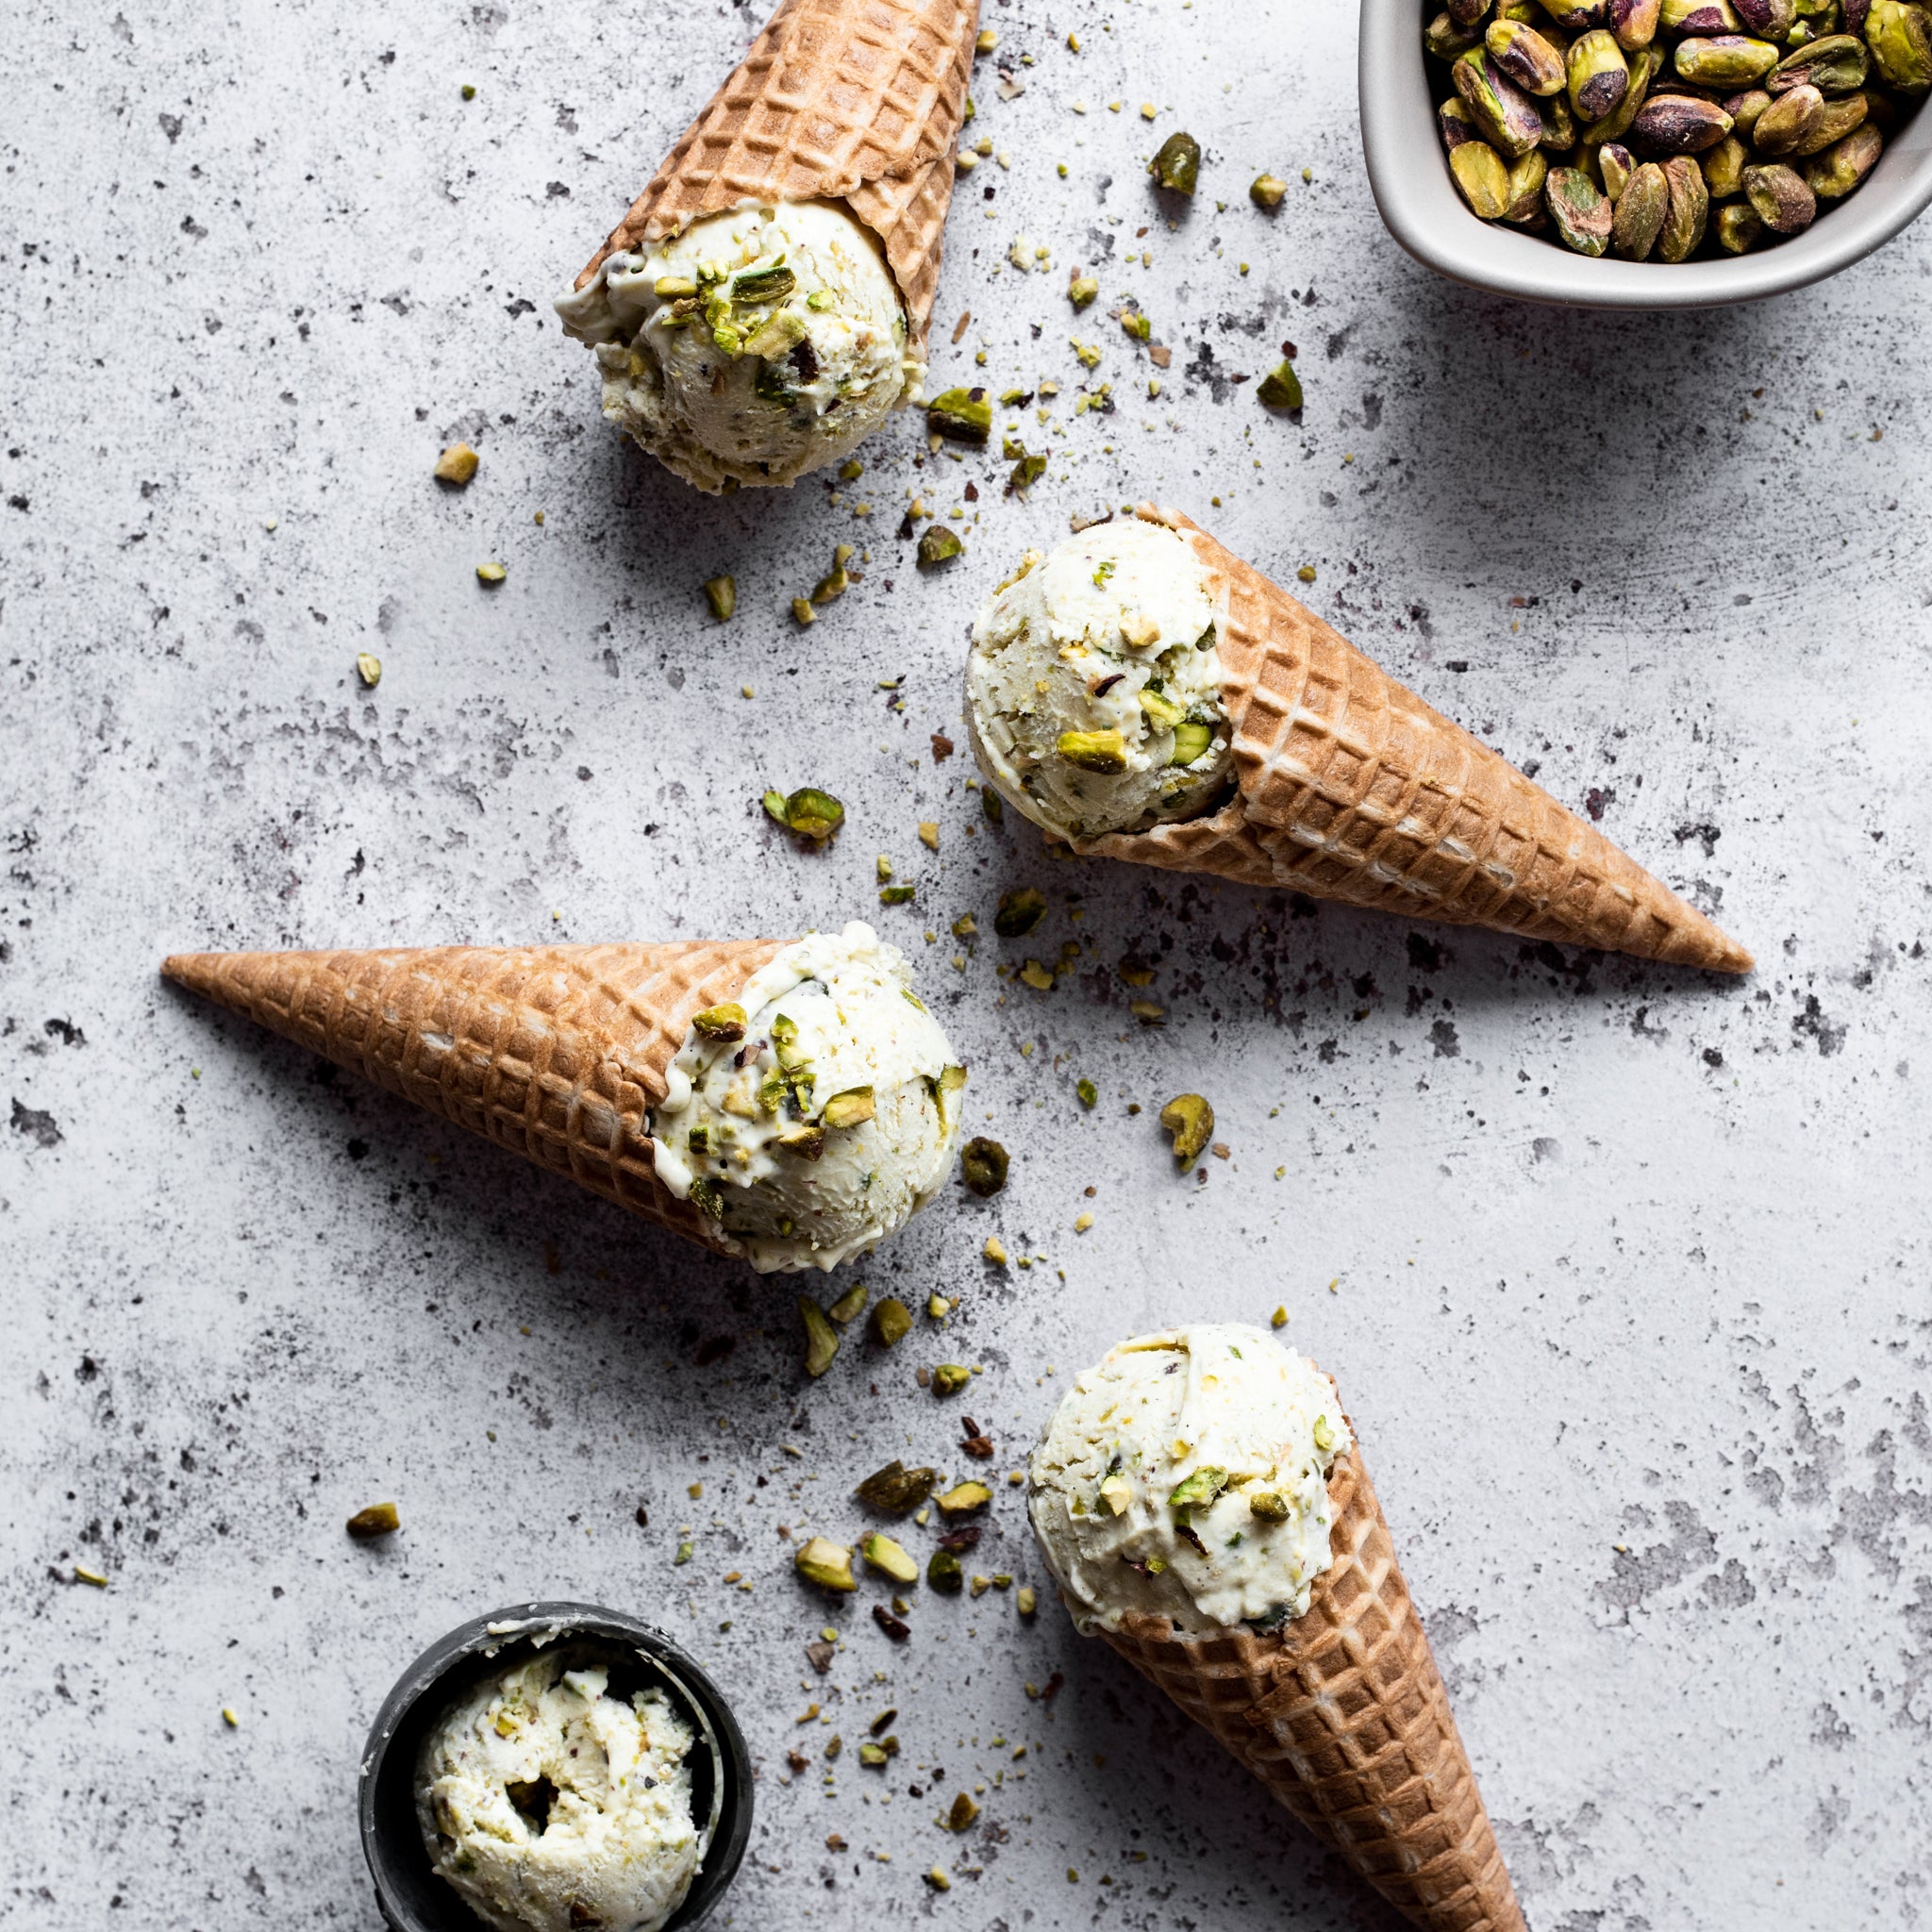 Four ice cream cones filled with homemade pistachio ice cream